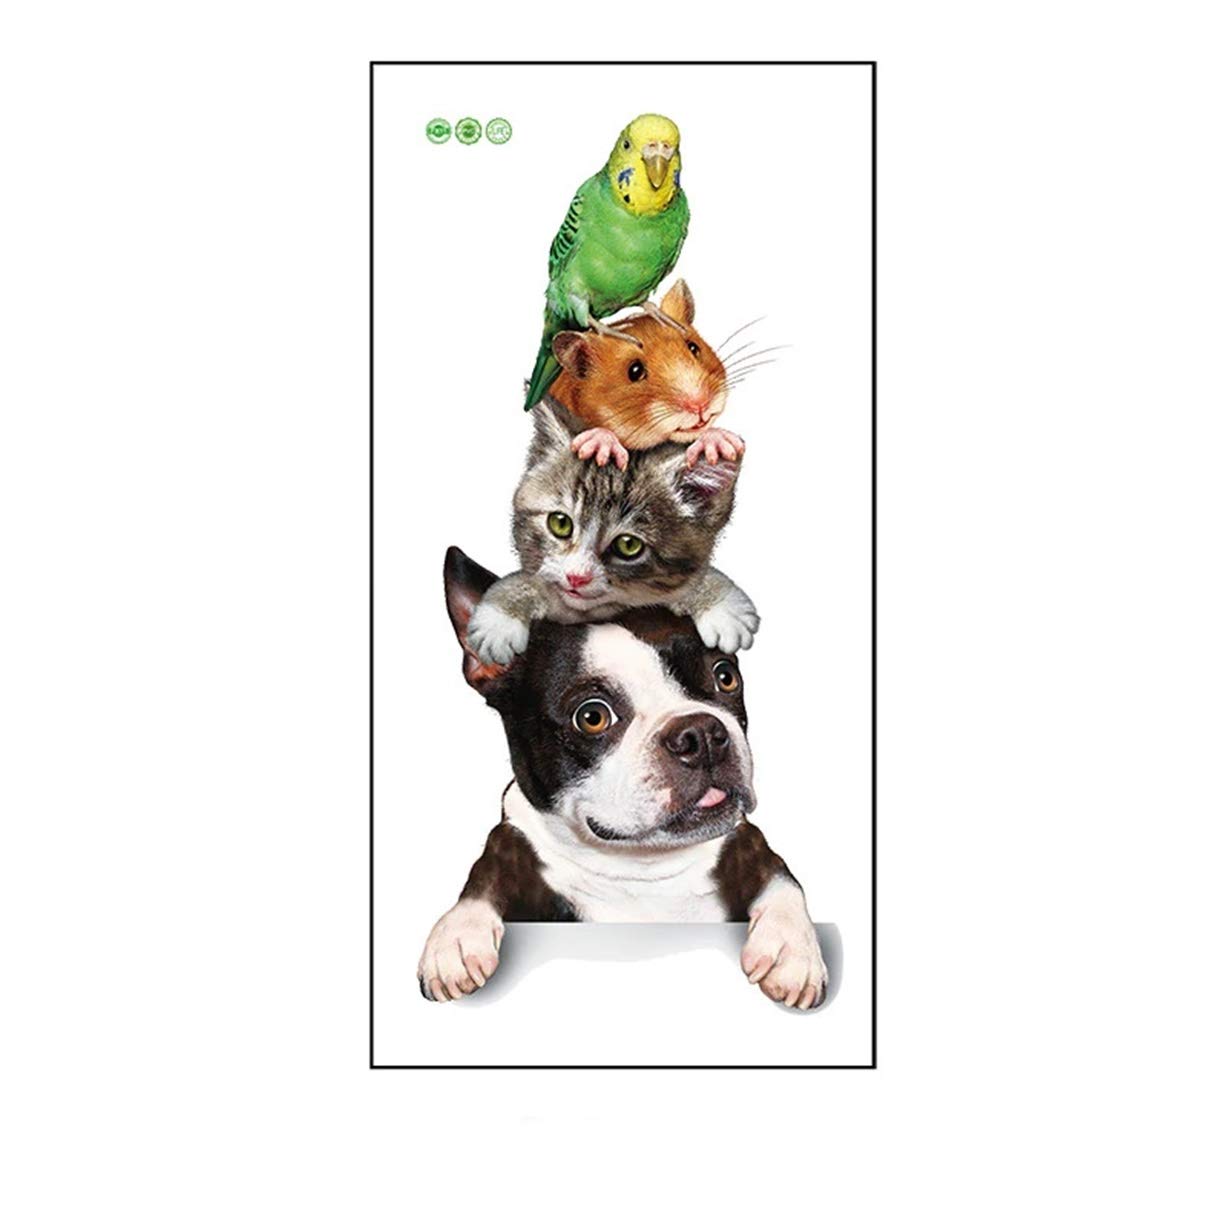 Bird Dog Cat Mouse - HD Wallpaper 